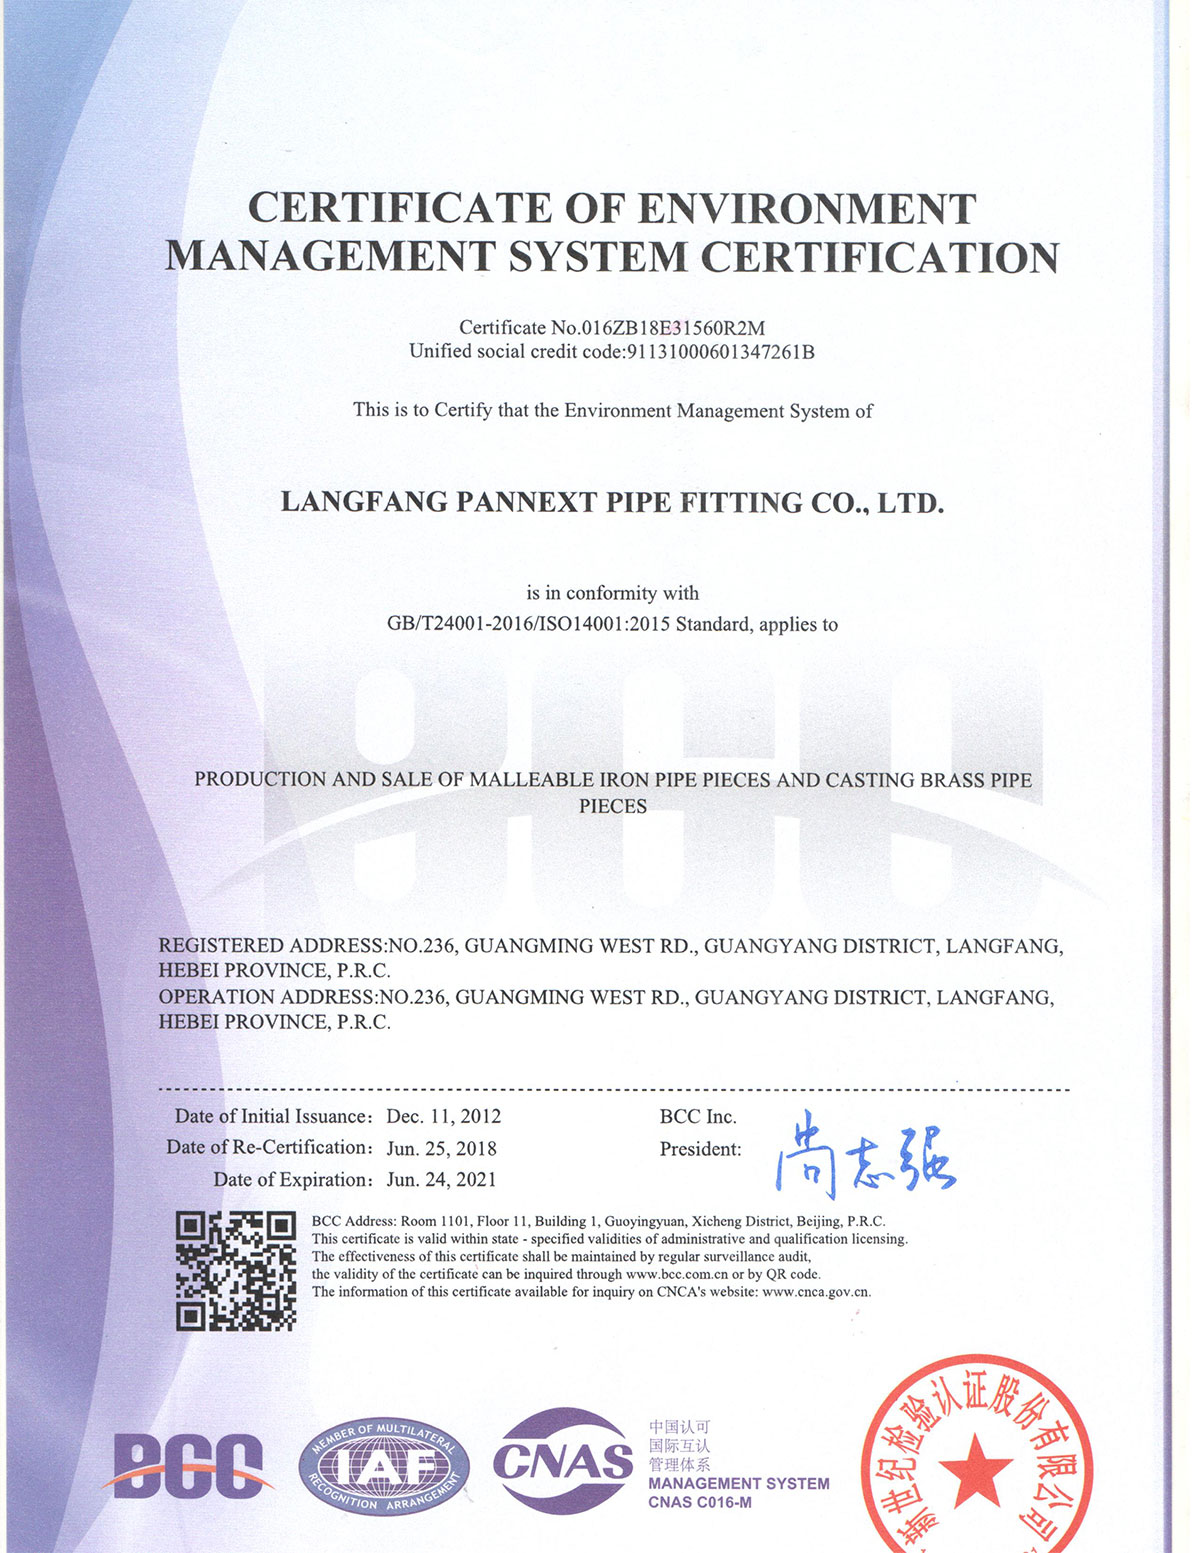 .ISO 9001 KERTIFIKAT2